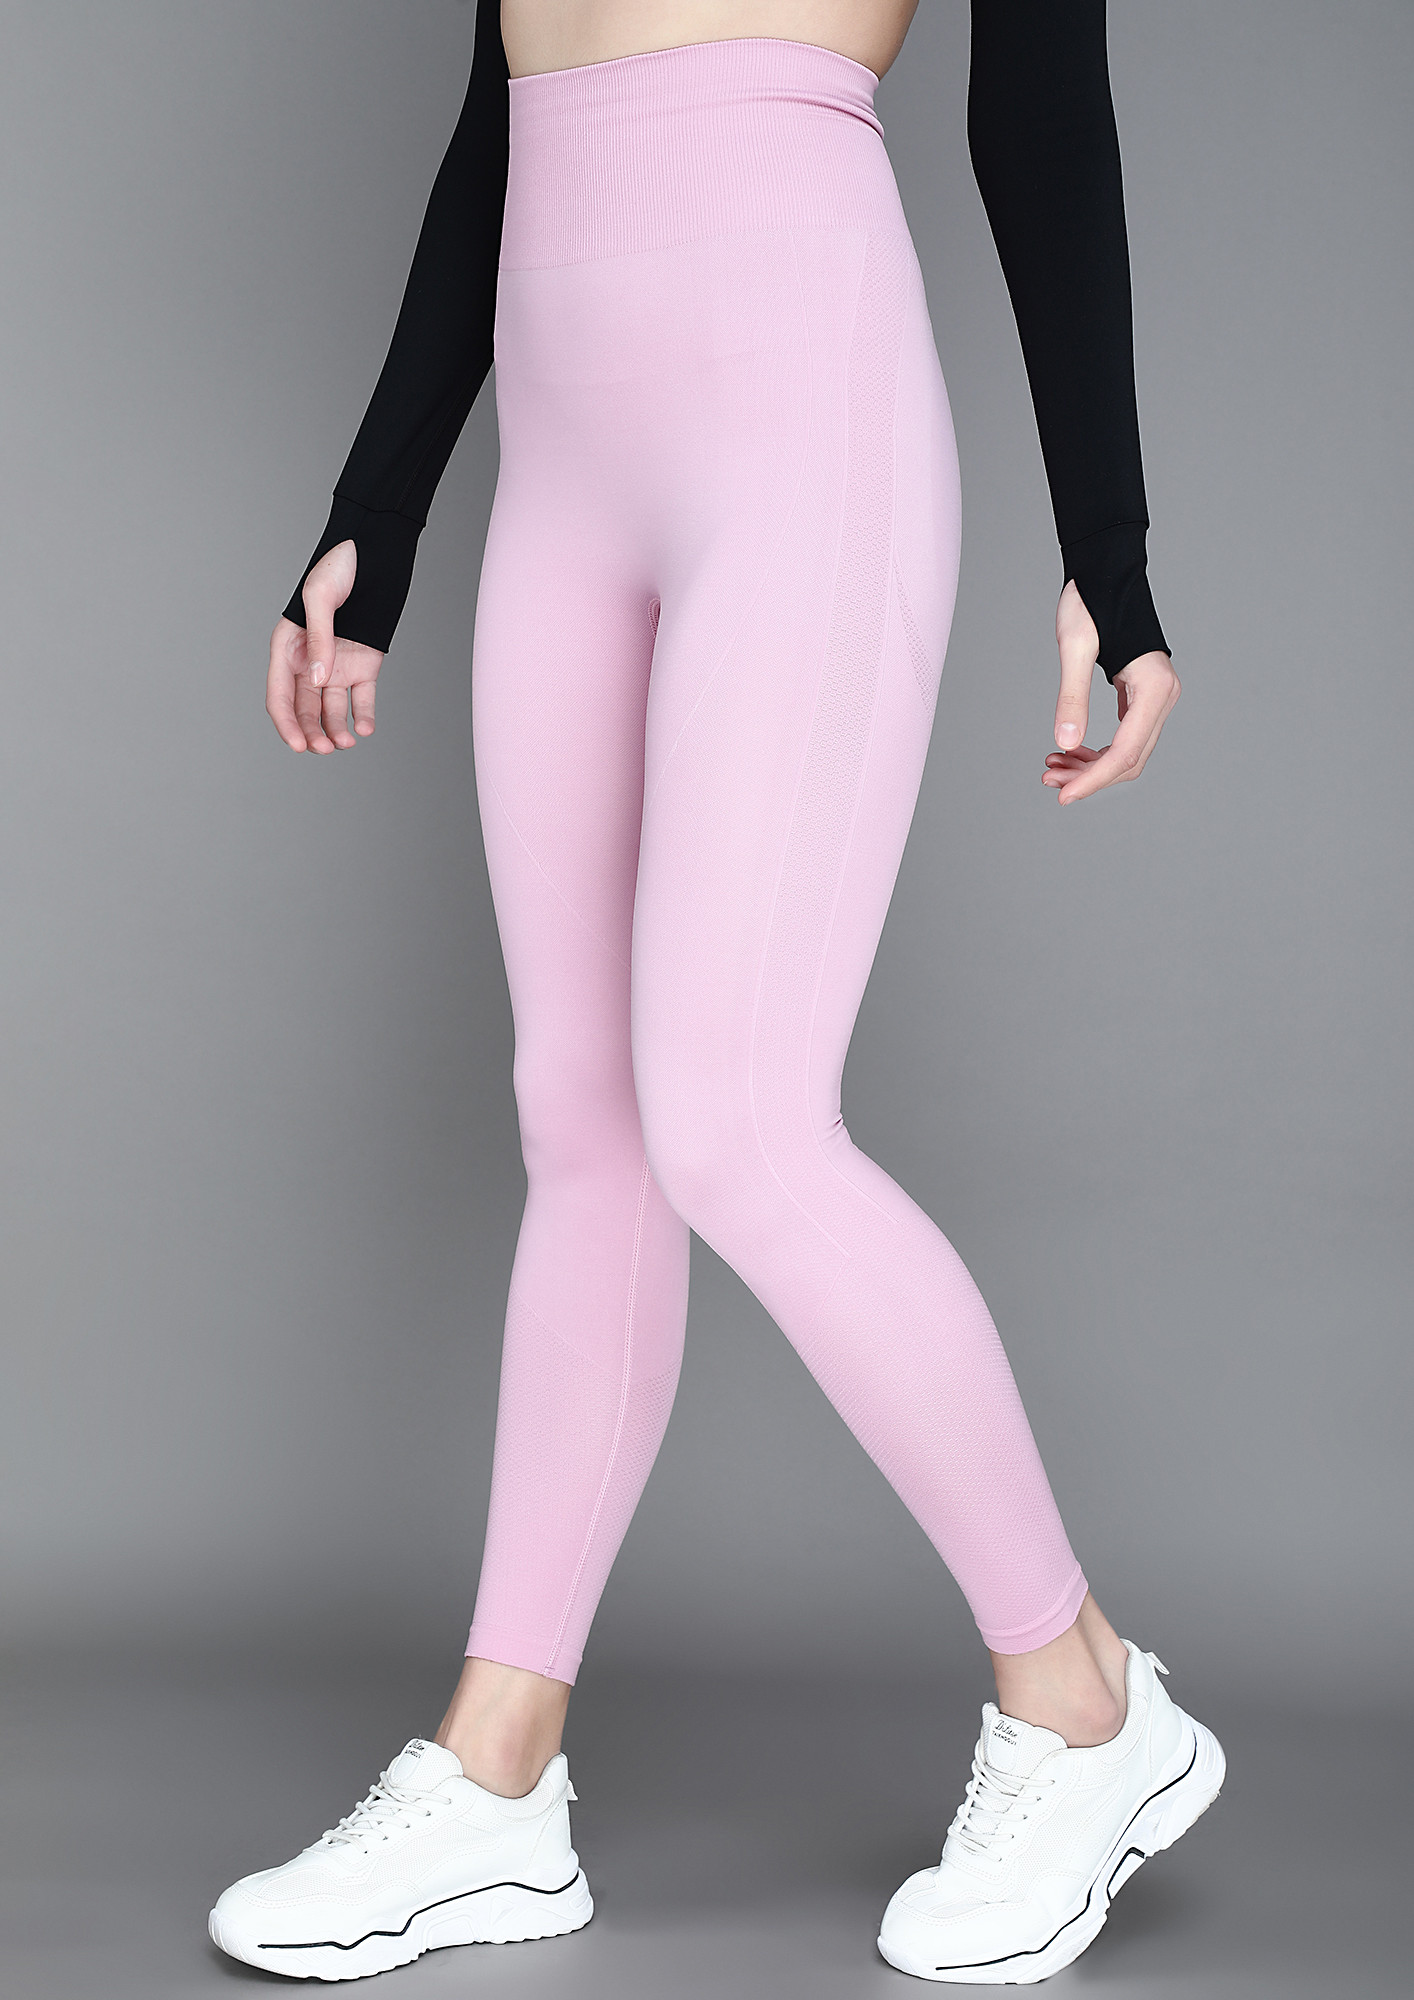 lululemon light pink leggings